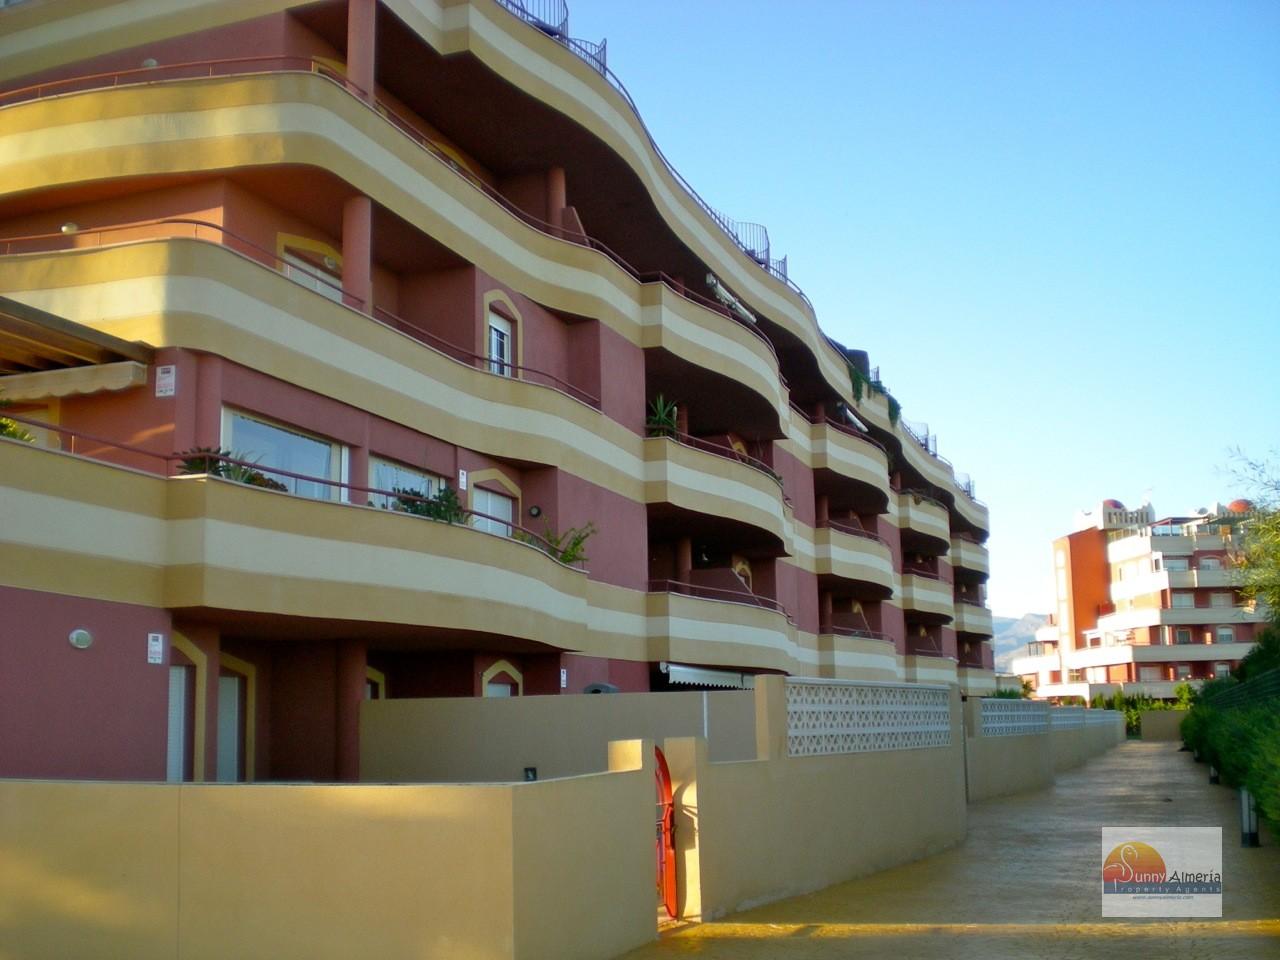 Luxury Apartment for rent in Roquetas de Mar, 750 €/month